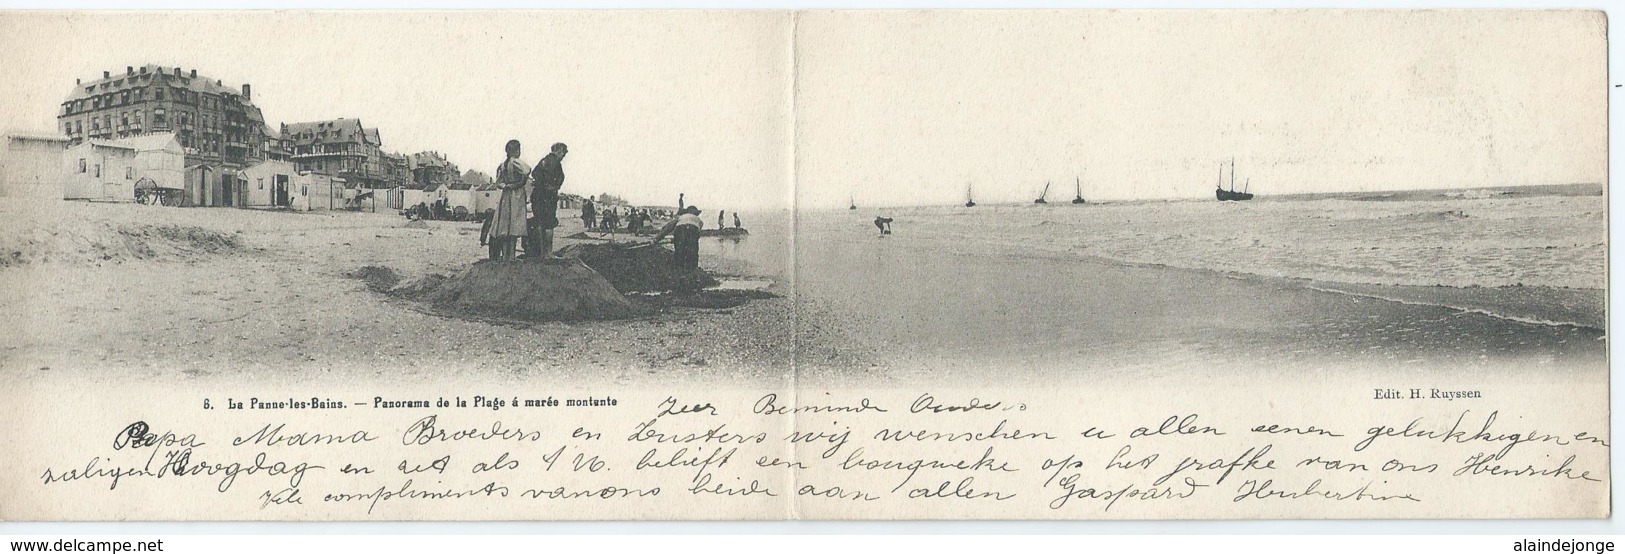 De Panne - La Panne -les-Bains - Panorama De La Plage A Marée Montante - Edit H. Ruyssen - 1903 - 8,50cmx27,50cm - De Panne